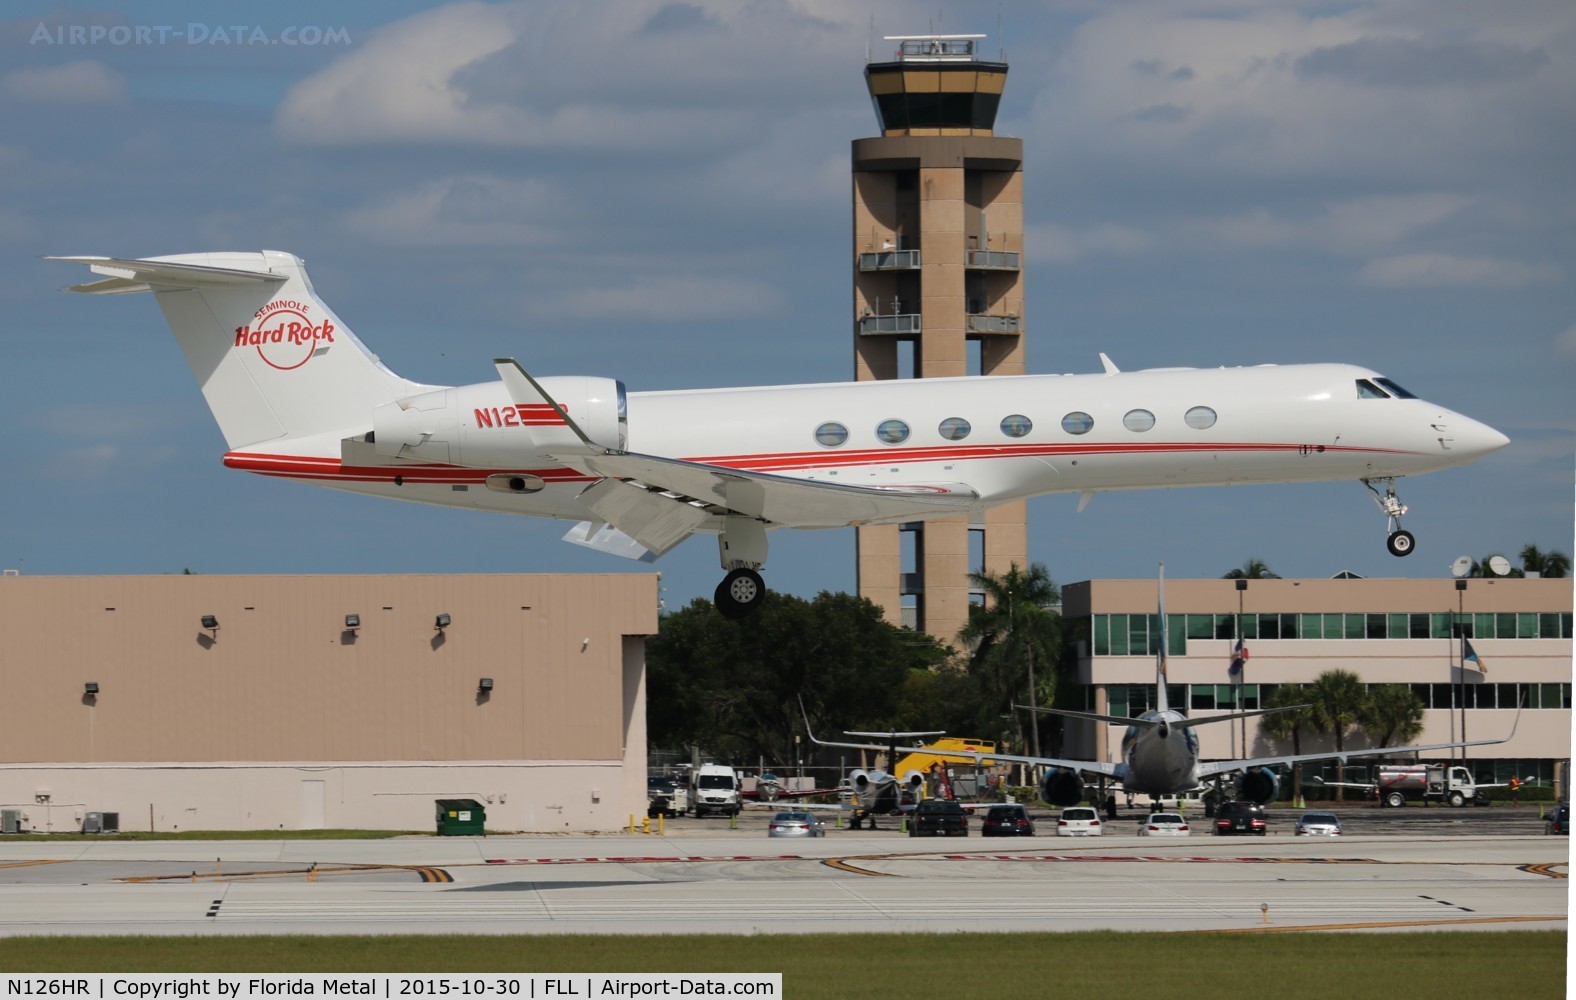 N126HR, 2013 Gulfstream Aerospace GV-SP (G550) C/N 5436, Seminole Tribe of Florida